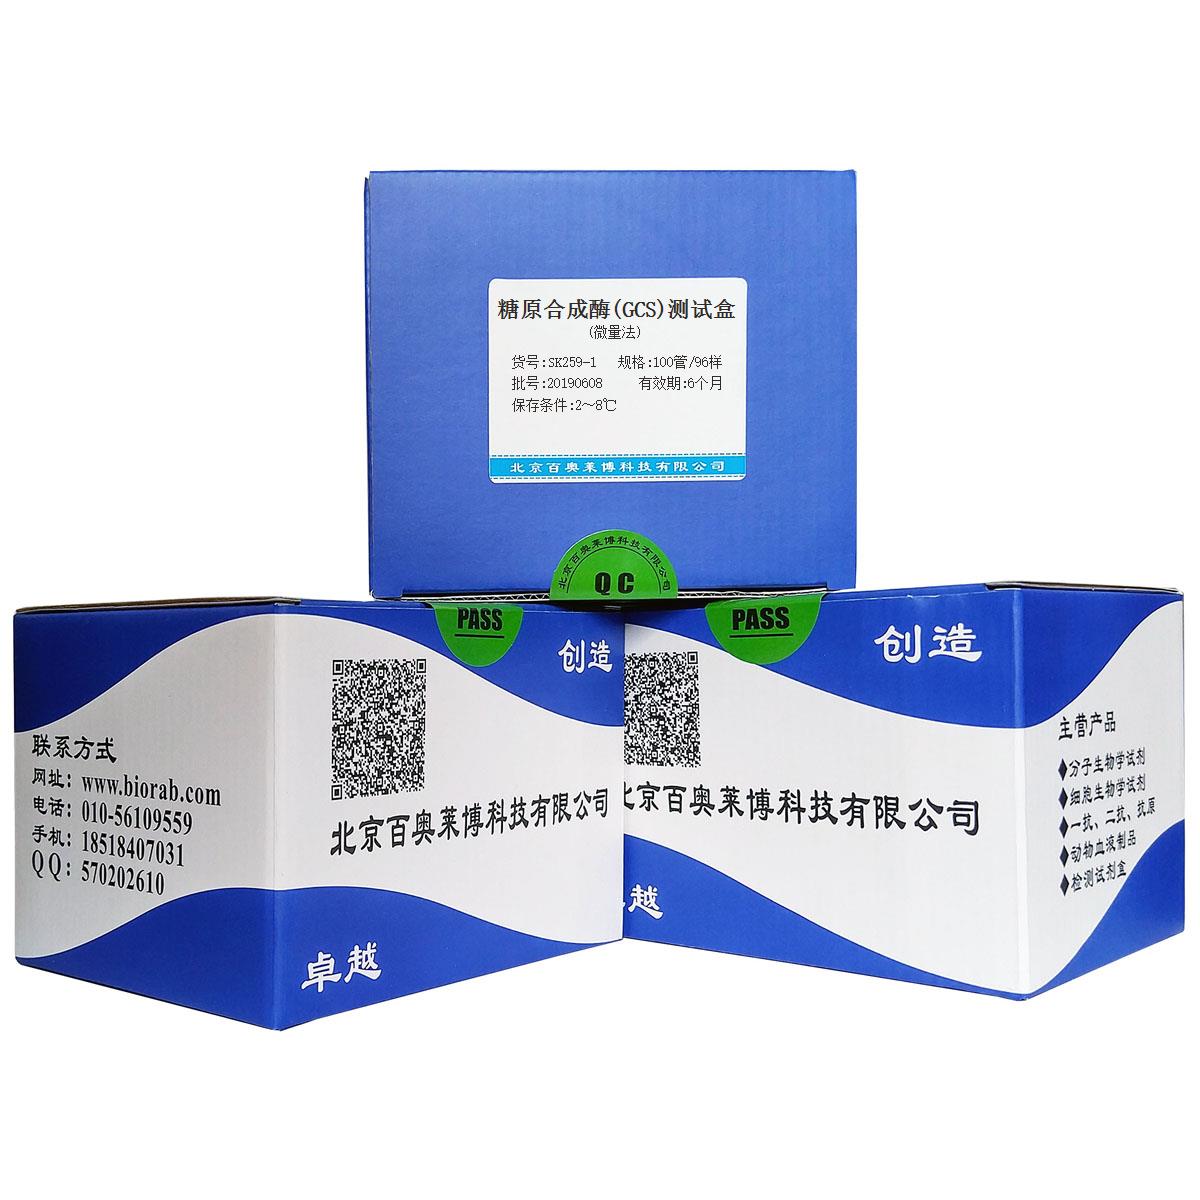 糖原合成酶(GCS)测试盒(微量法)北京价格